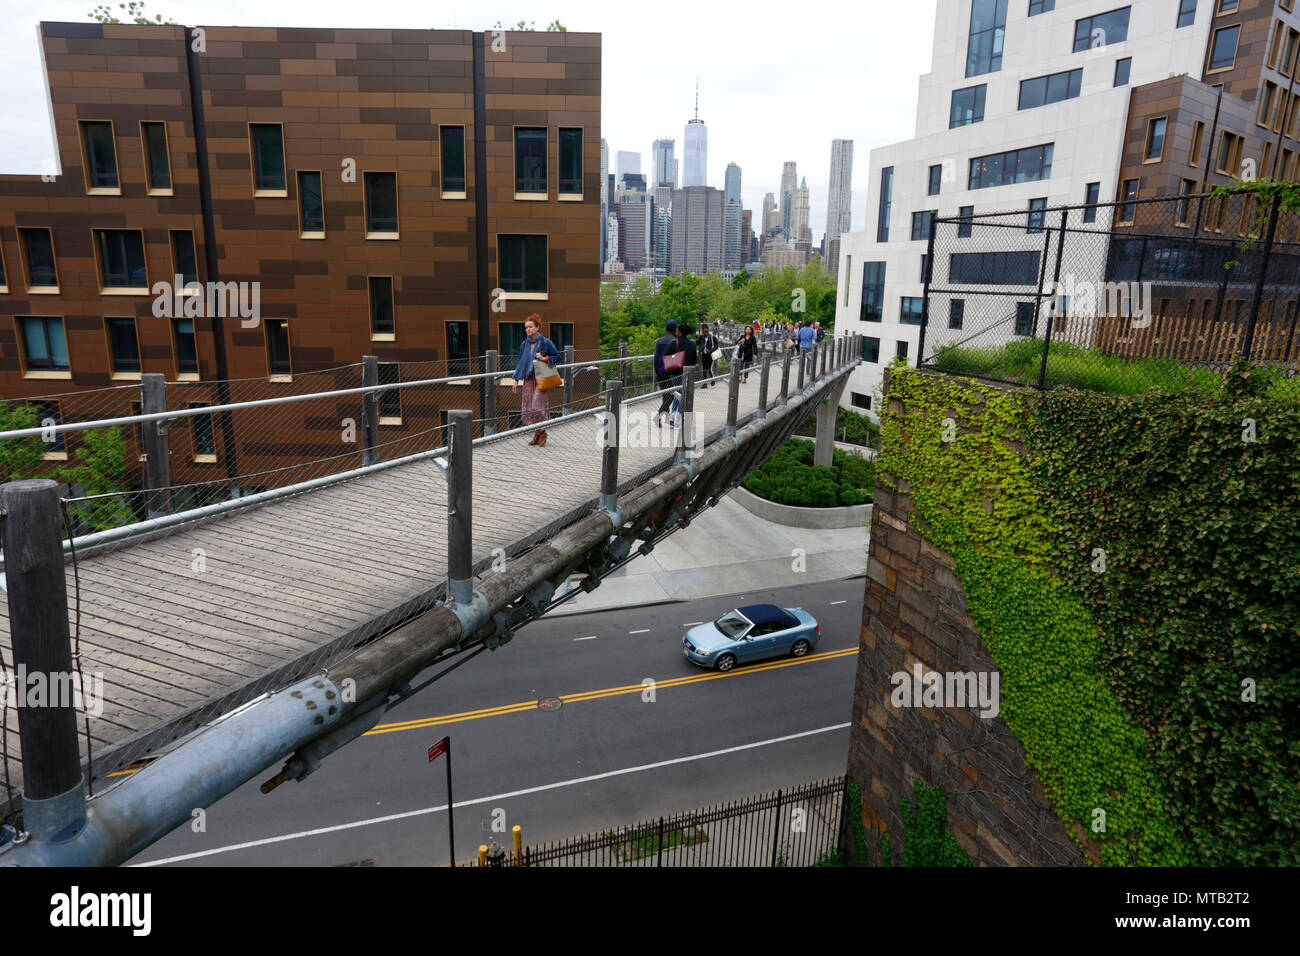 La gente a piedi attraverso il parco Squibb ponte sul ponte di Brooklyn Park, New York, NY. Foto Stock